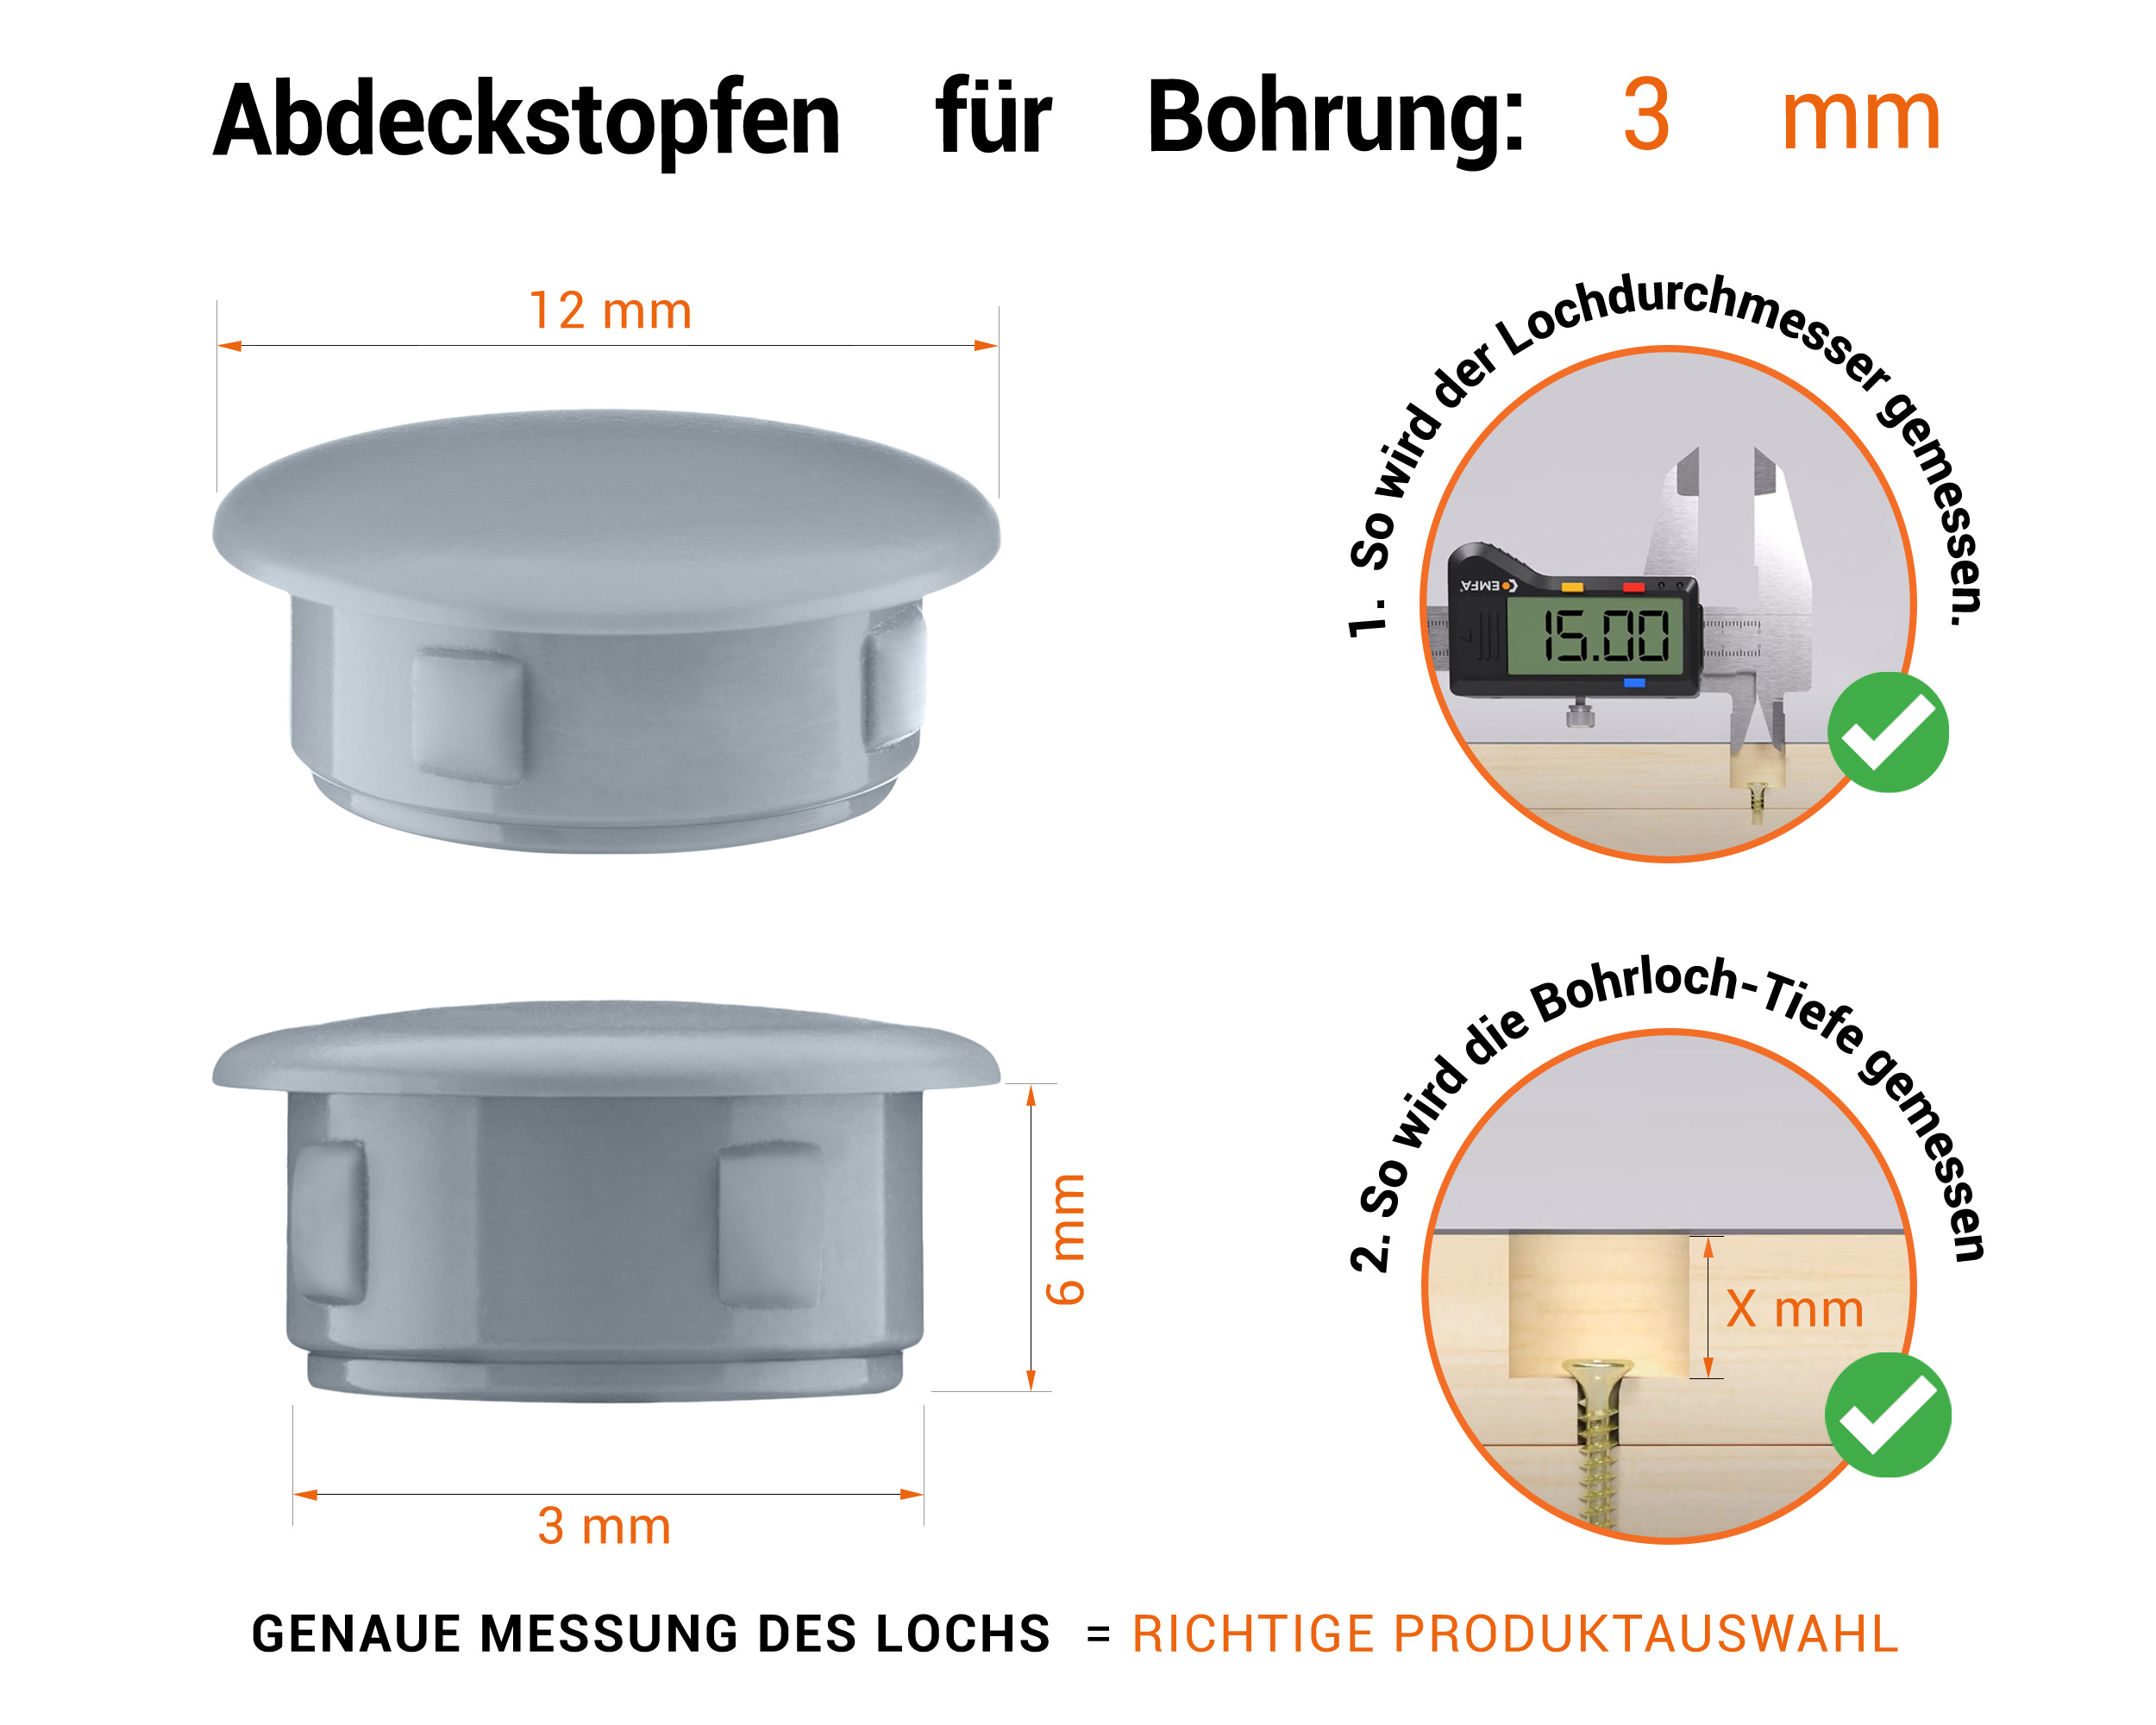 Graue Blindstopfen aus Kunststoff für Bohrung 3 mm mm mit technischen Abmessungen und Anleitung für korrekte Messung